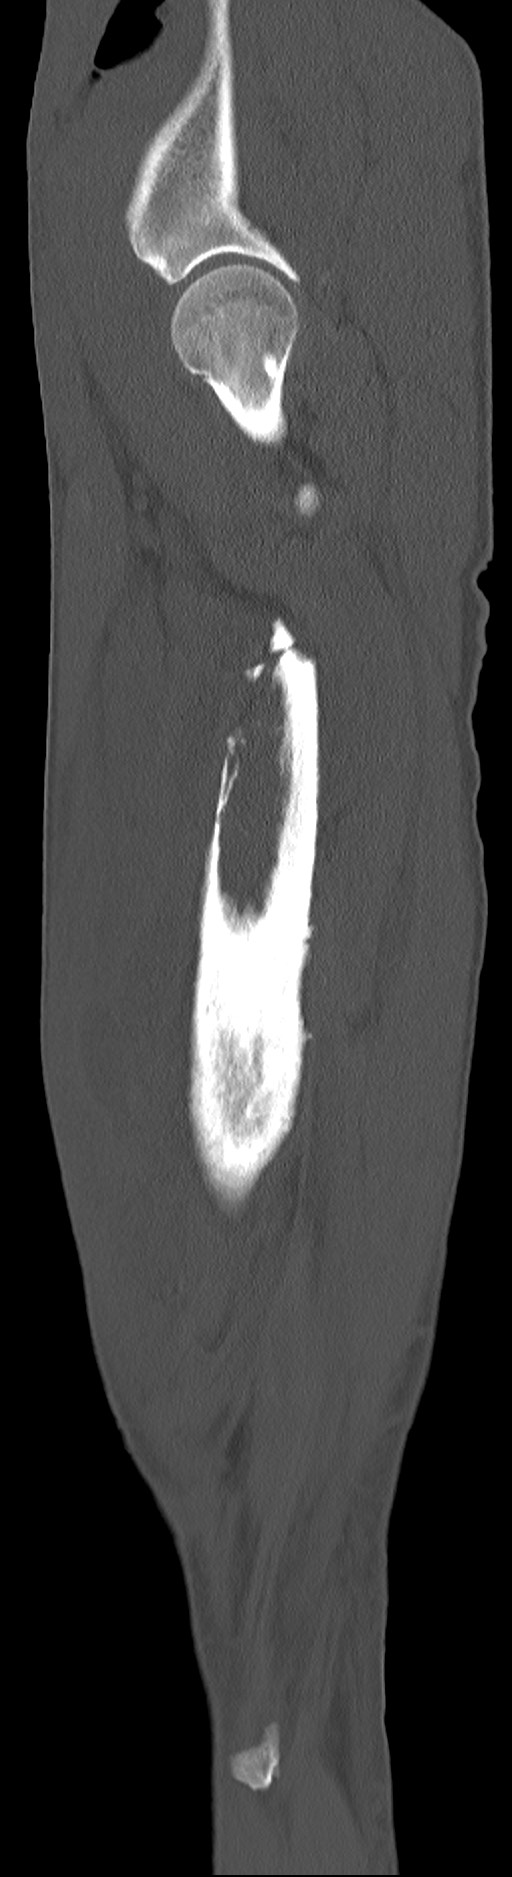 Chronic osteomyelitis (with sequestrum) (Radiopaedia 74813-85822 C 88).jpg